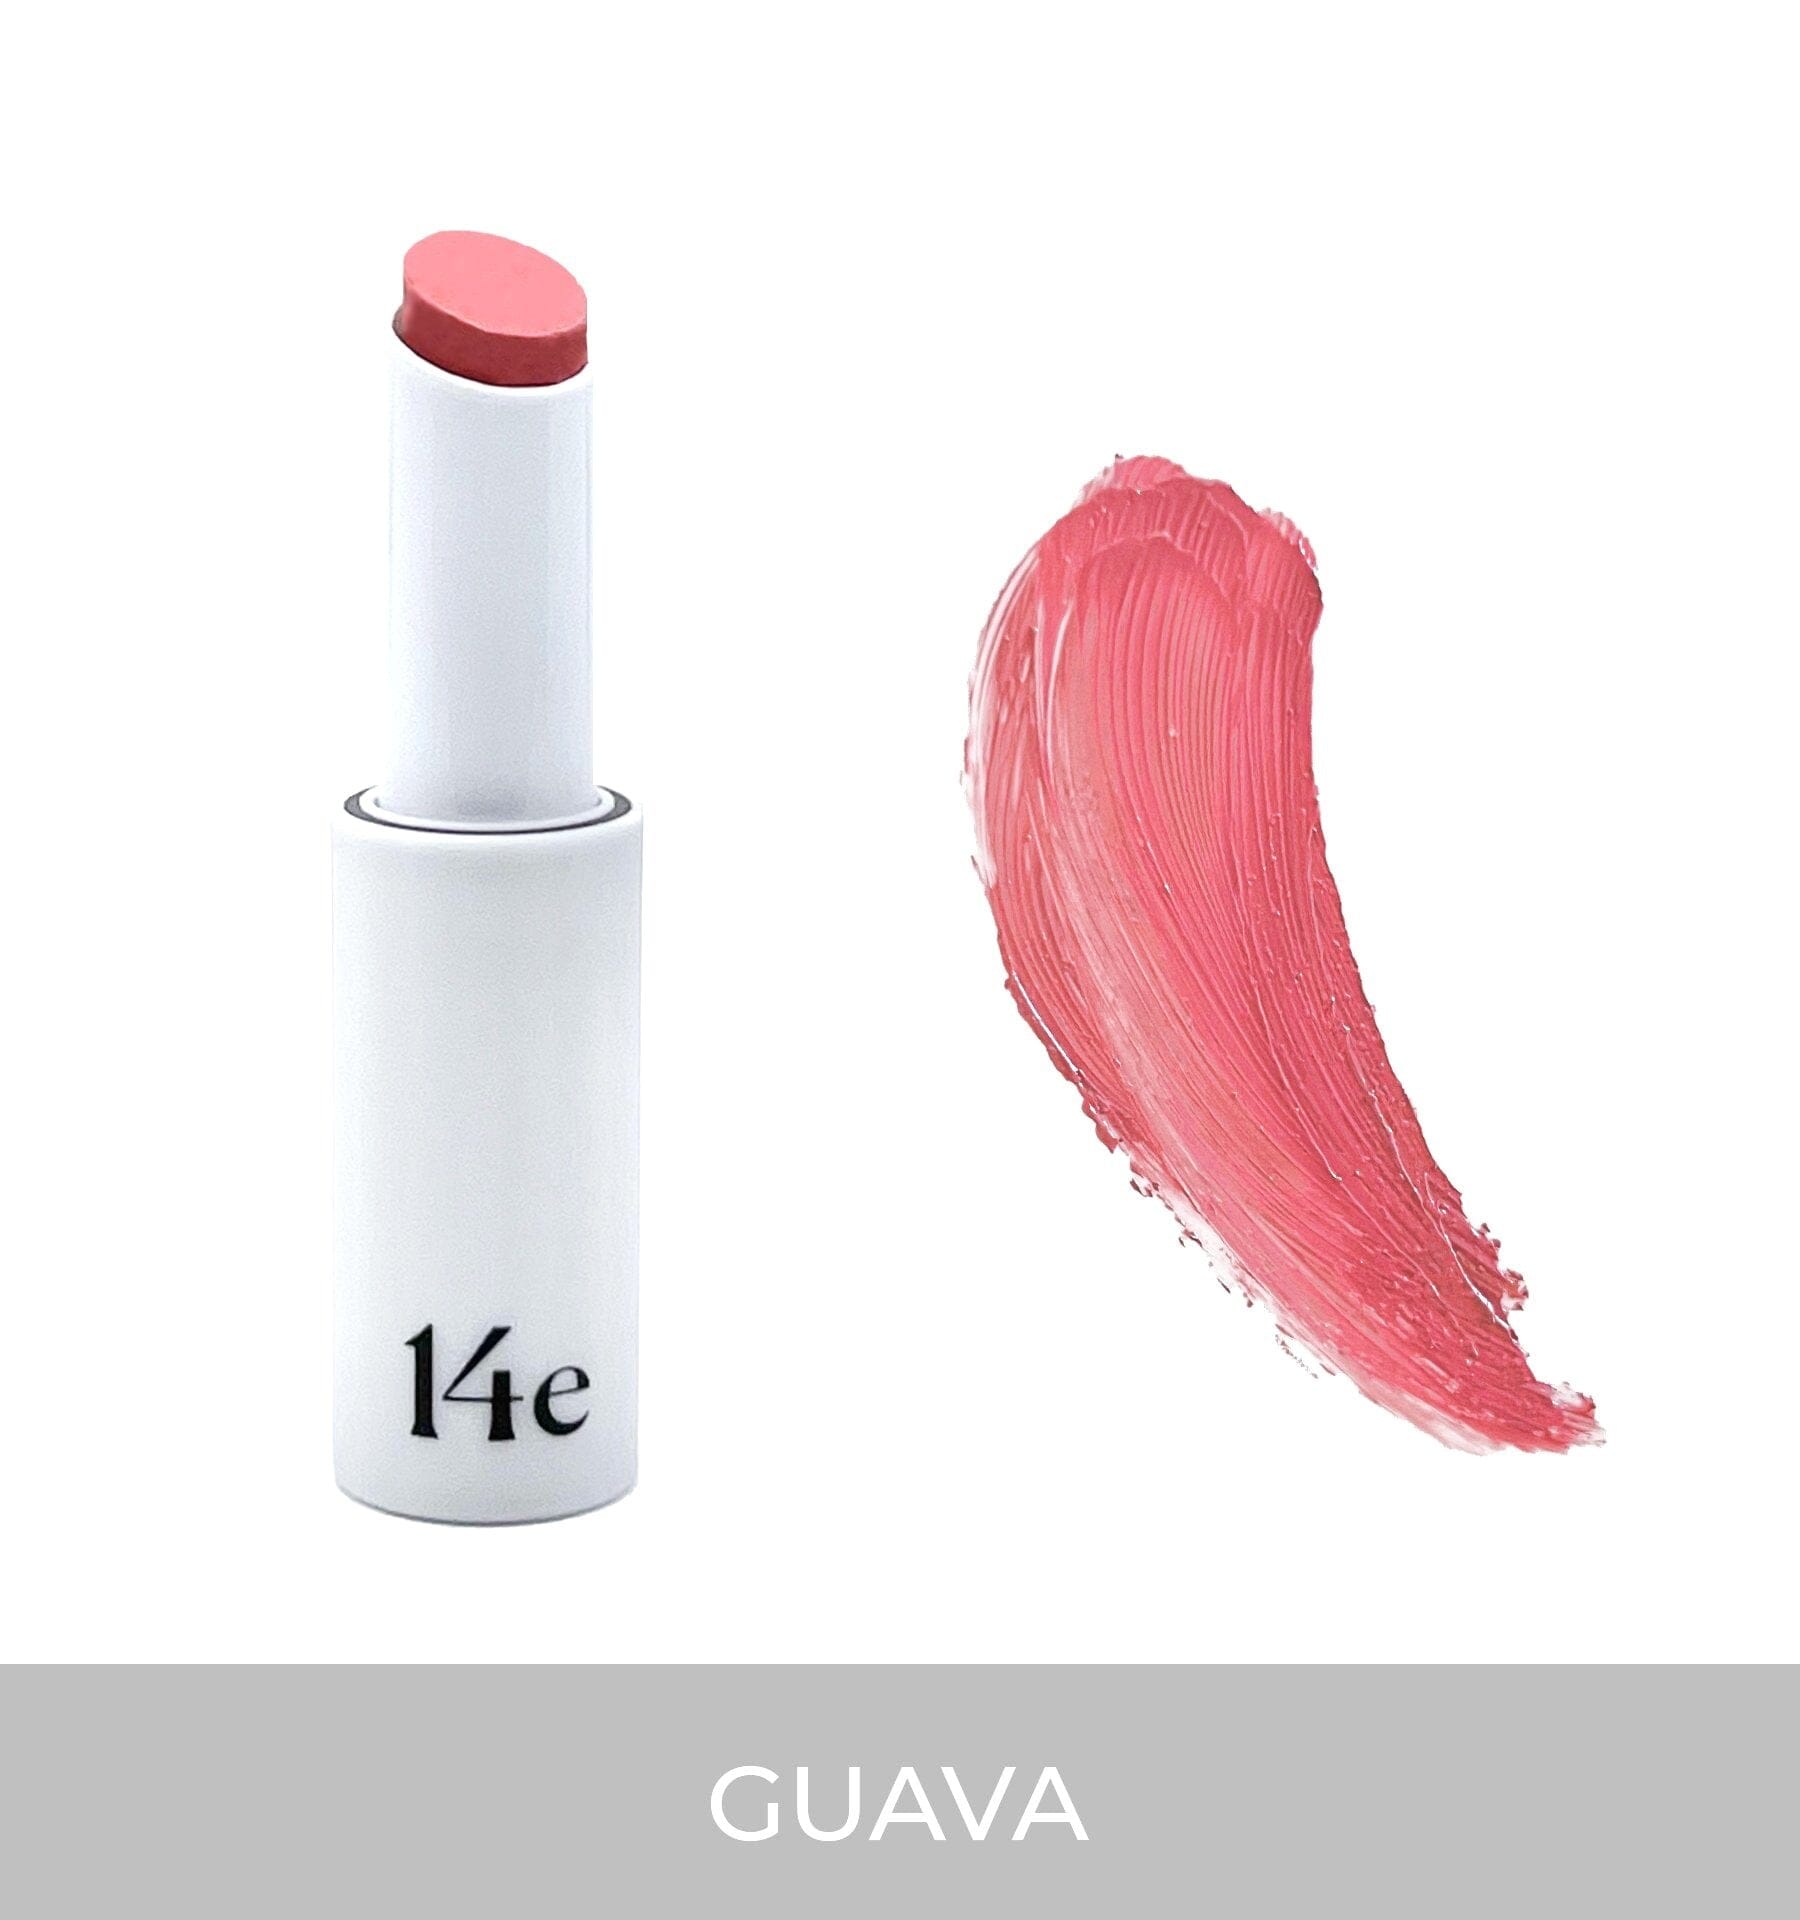 Lip Sheen (5 Farbtöne) Getönte Lippenpflege 14e Cosmetics Guava - Genuine Selection